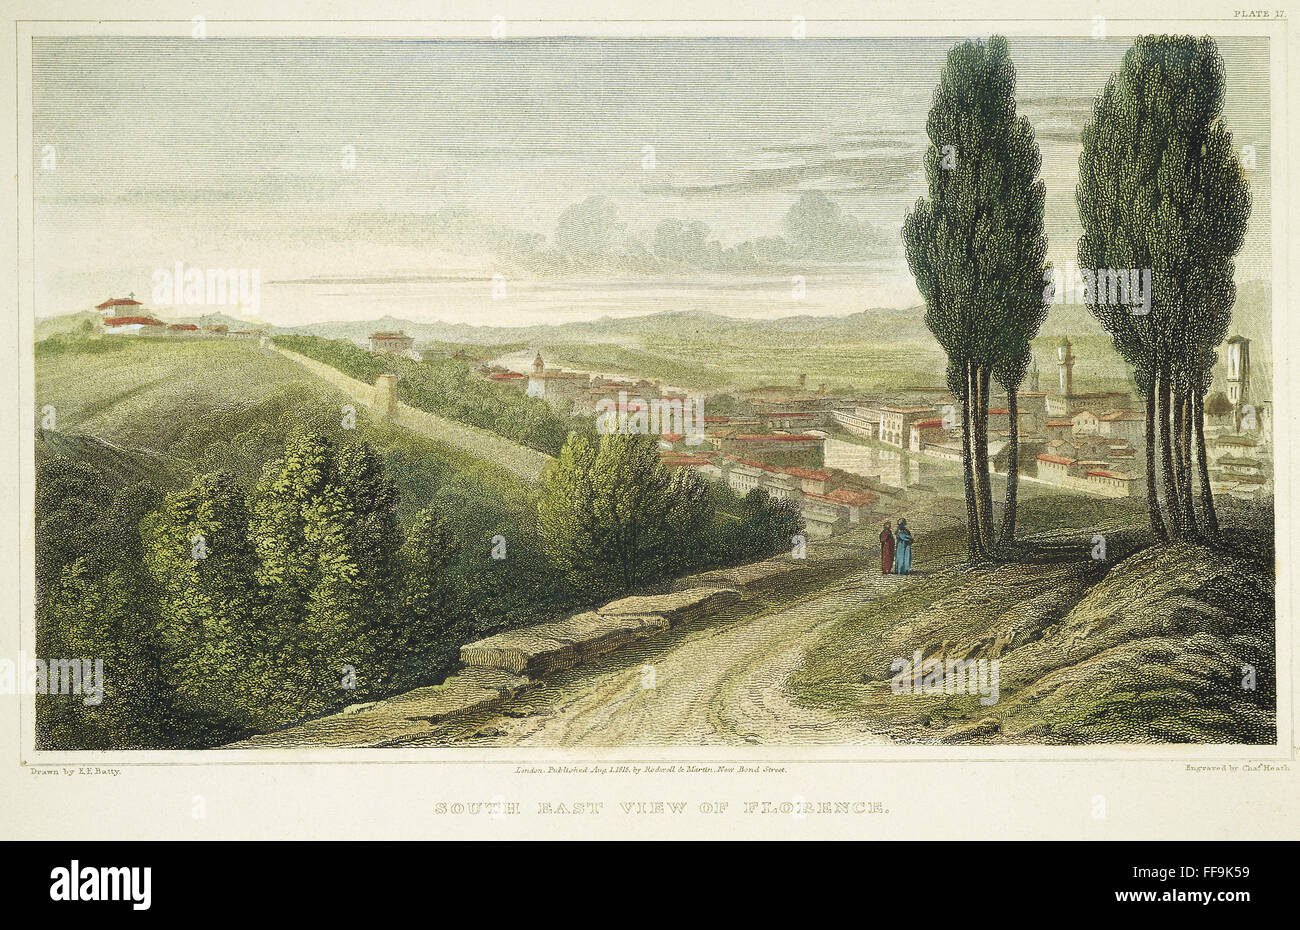 FLORENCE, ITALIE, 1818. /NSouth vue de l'Est de Florence, Italie : gravure sur acier, anglais, 1818. Banque D'Images